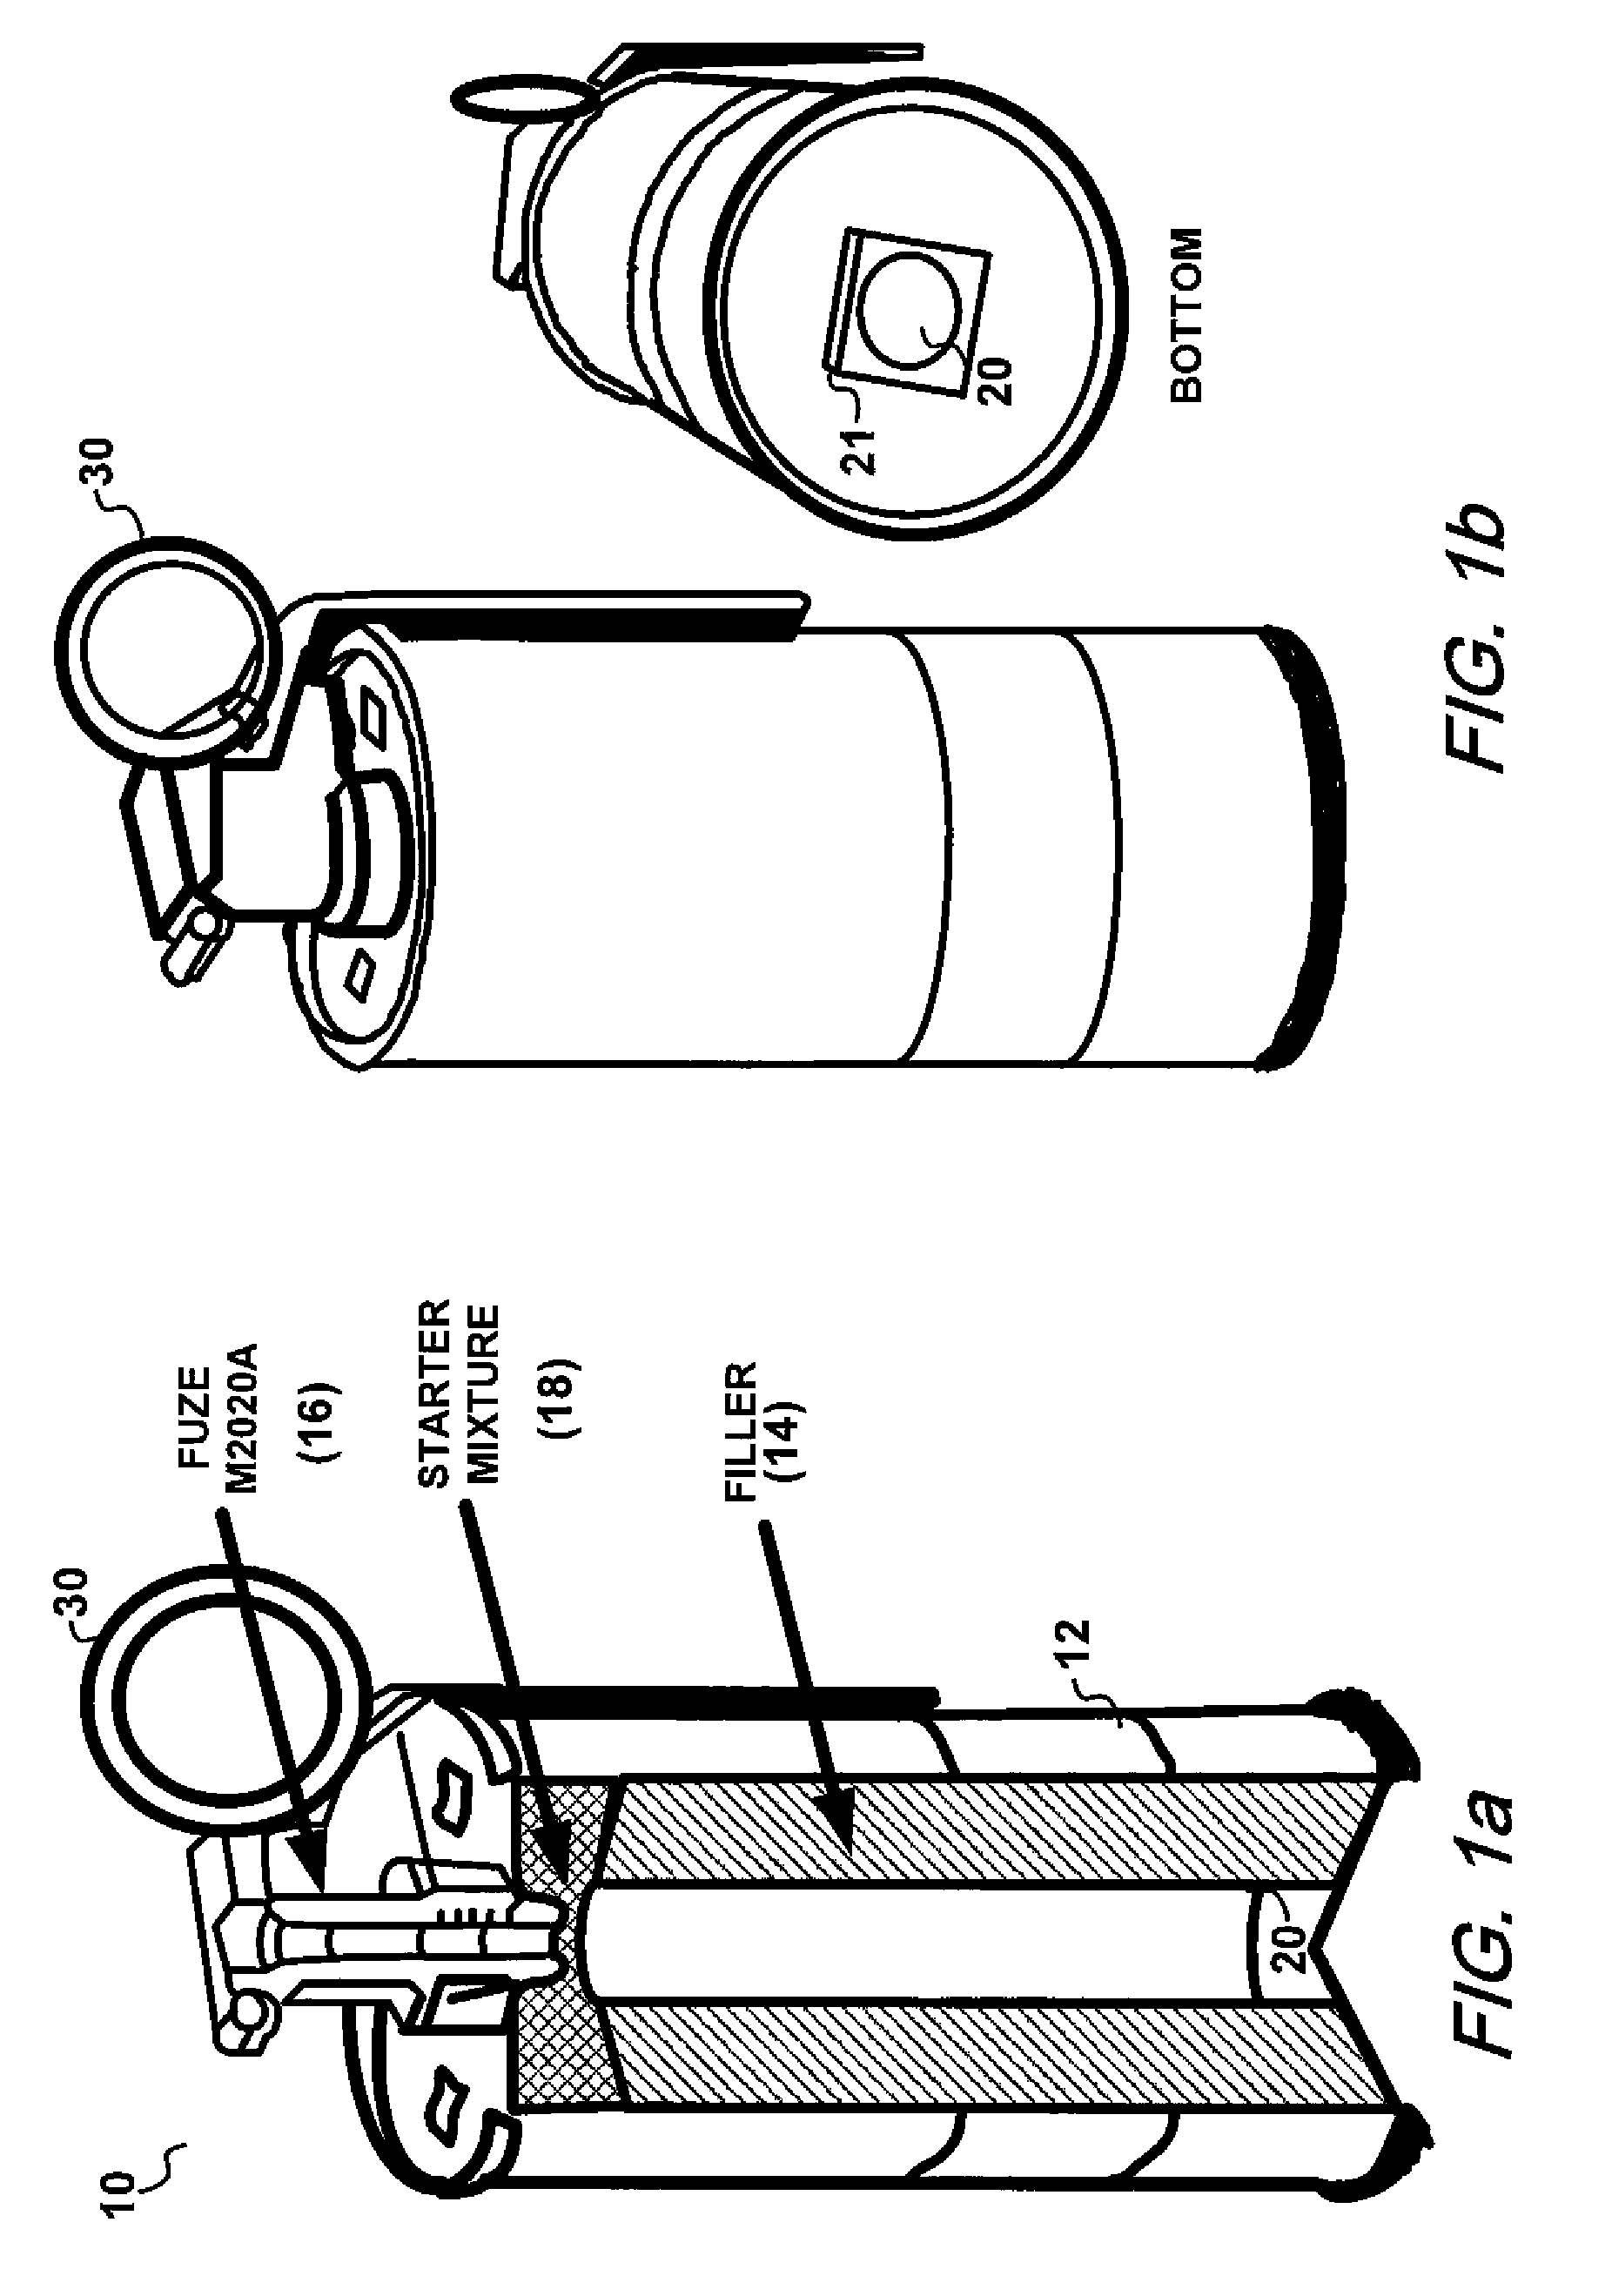 Primer adapter for hand grenade fuze